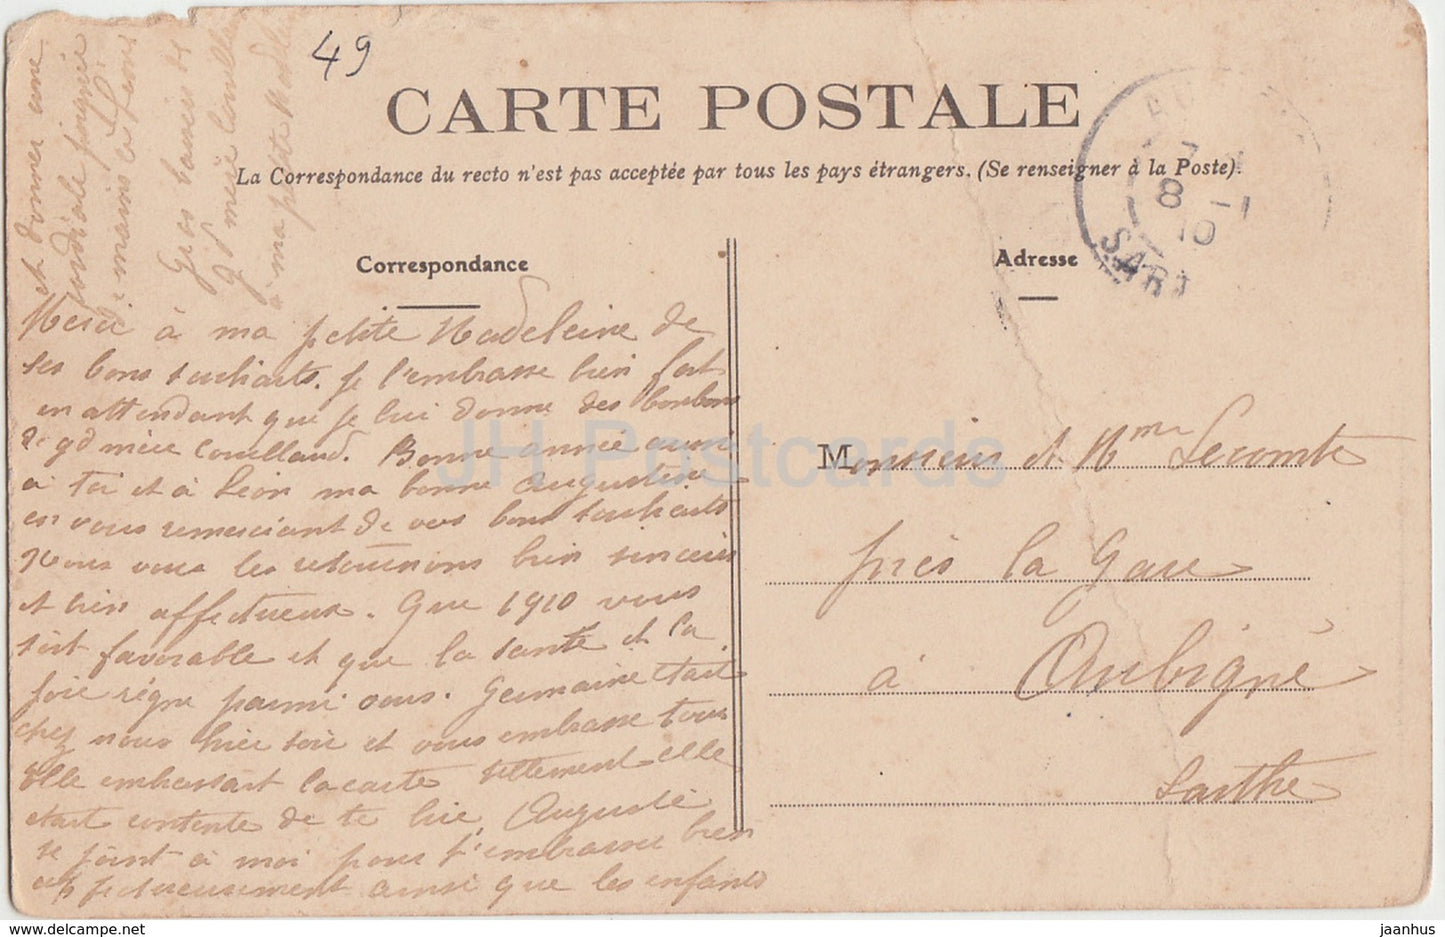 Grez Neuville - Chateau de La Violais - castle - 63 - 1910 - old postcard - France - used